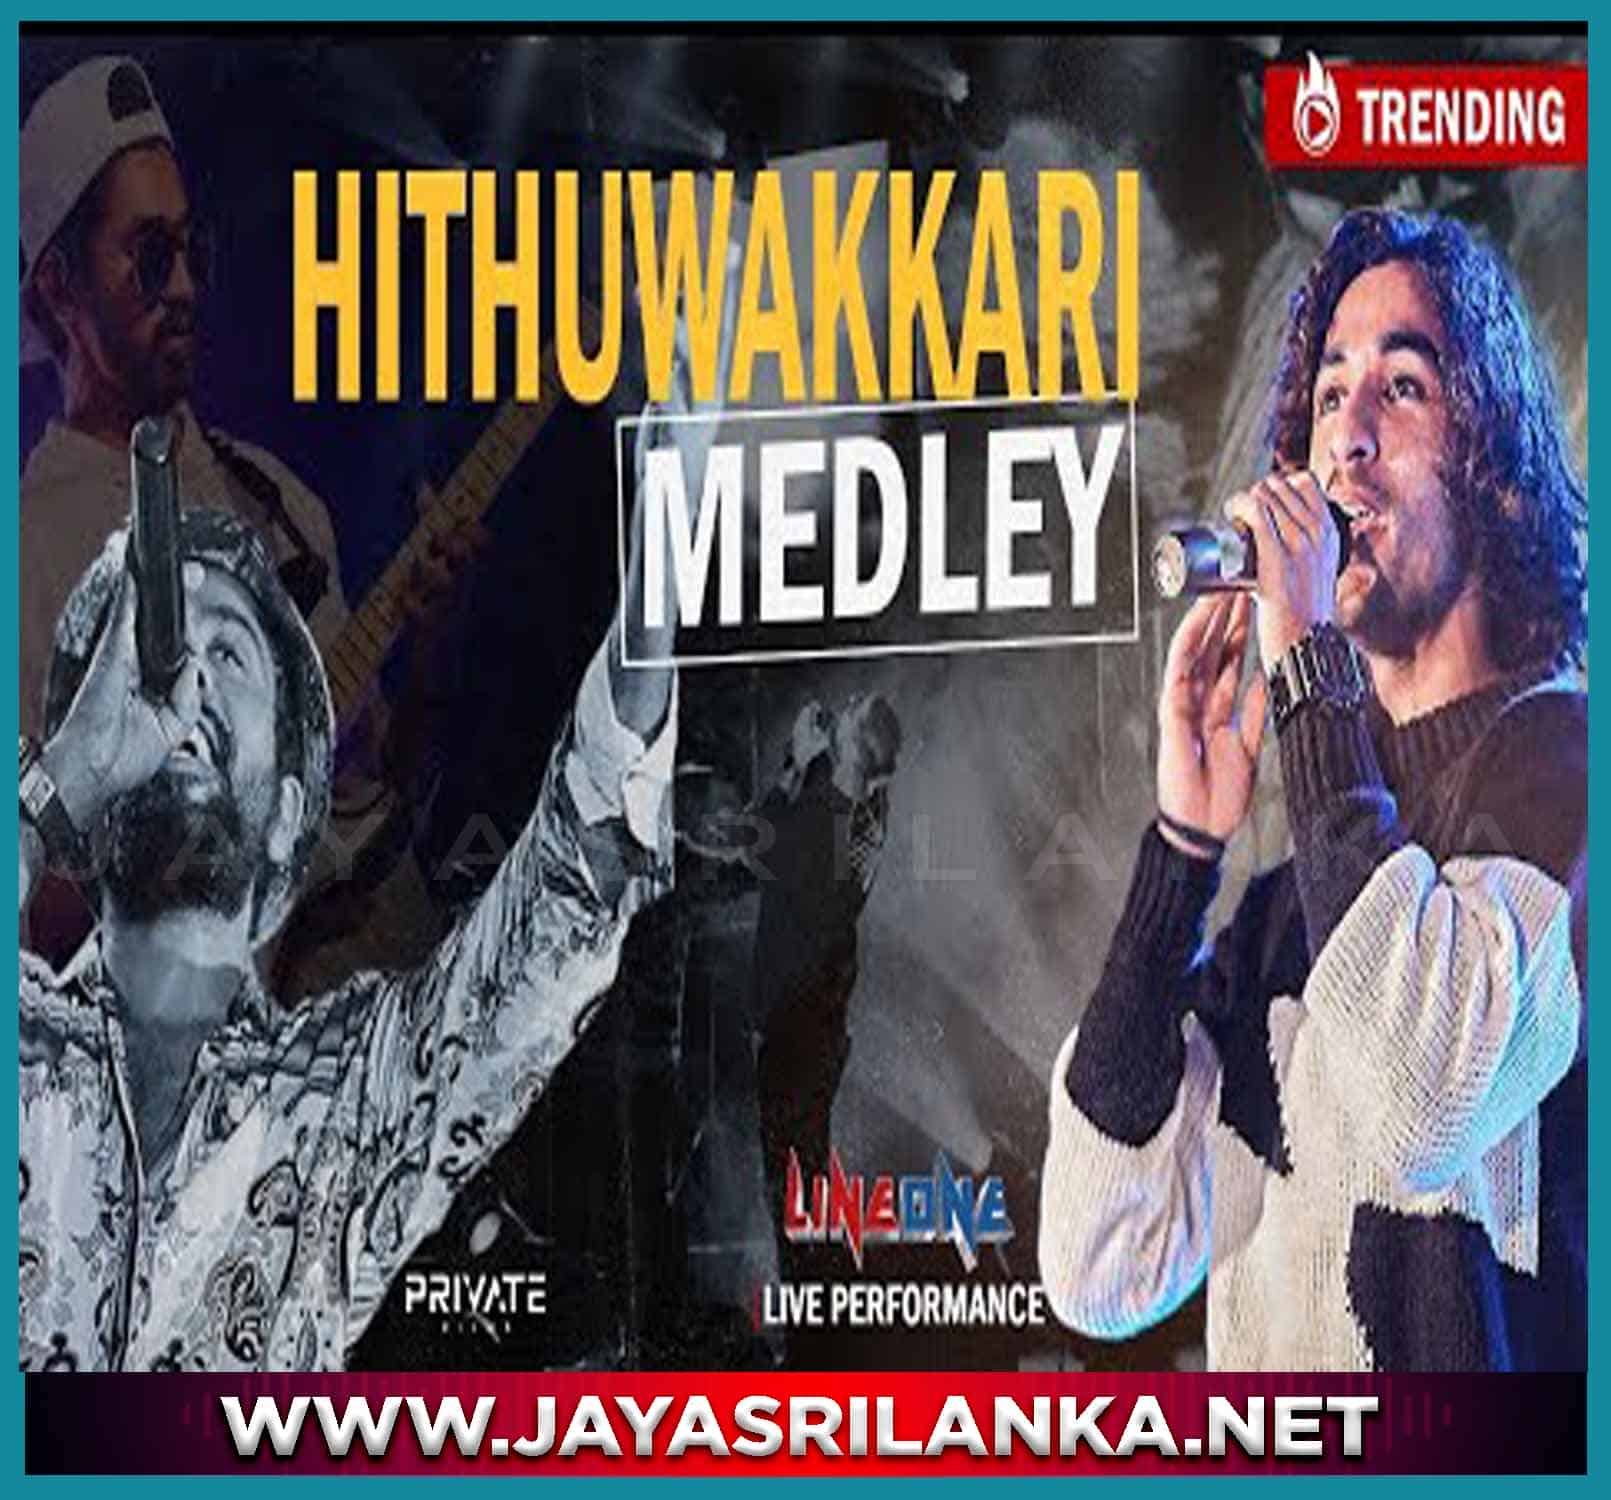 Hithuwakkari Medley Live at University Of Peradeniya